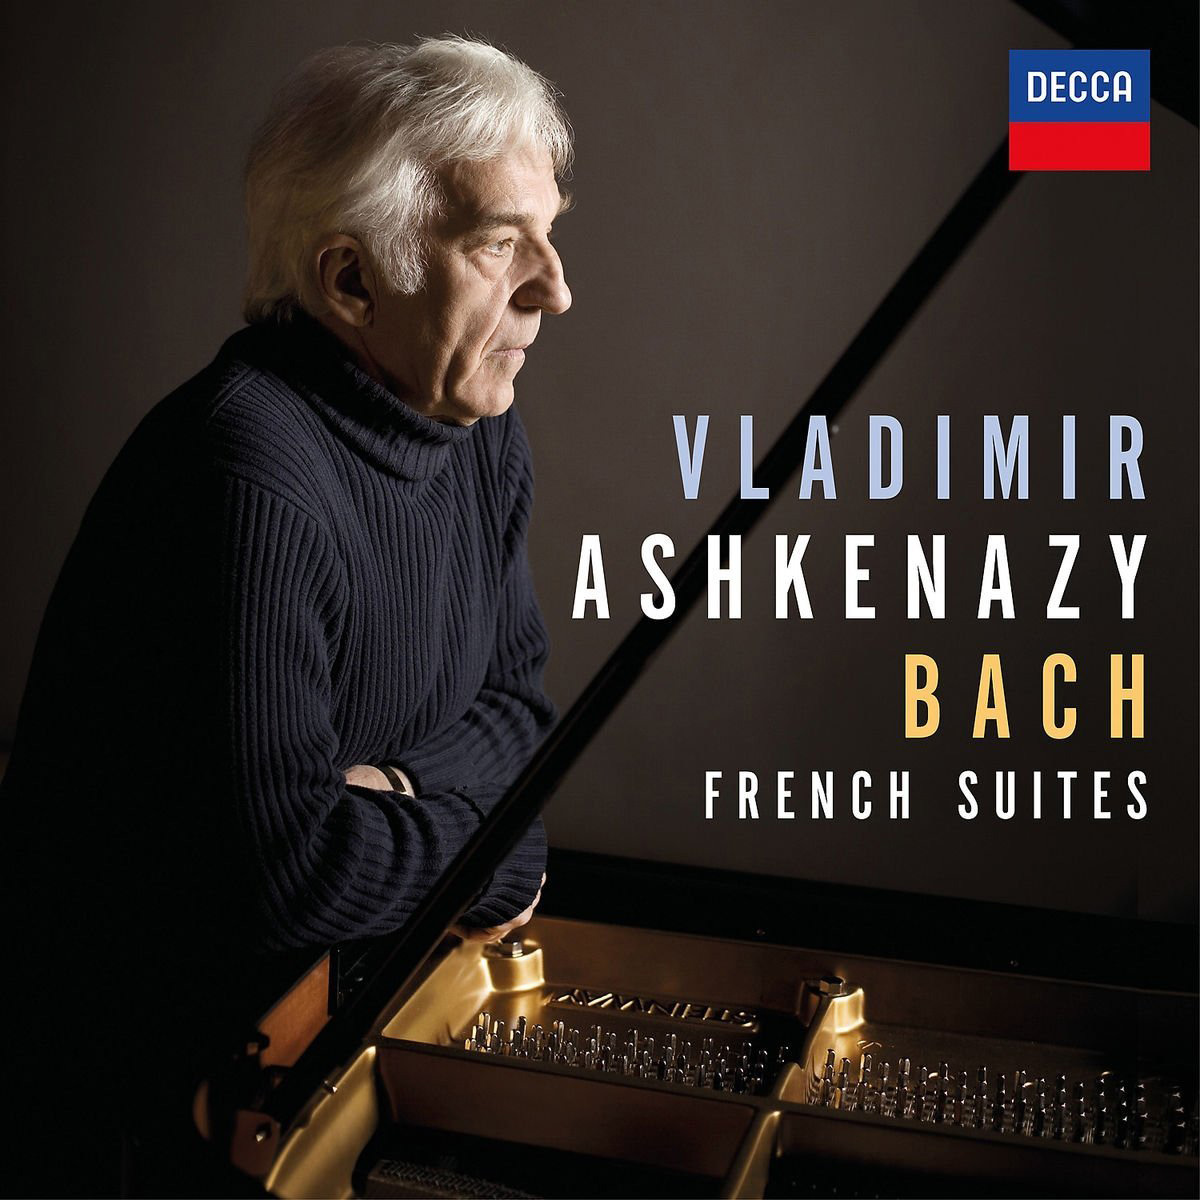 Vladimir Ashkenazy: 2 nuove pubblicazioni per il suo 80° compleanno